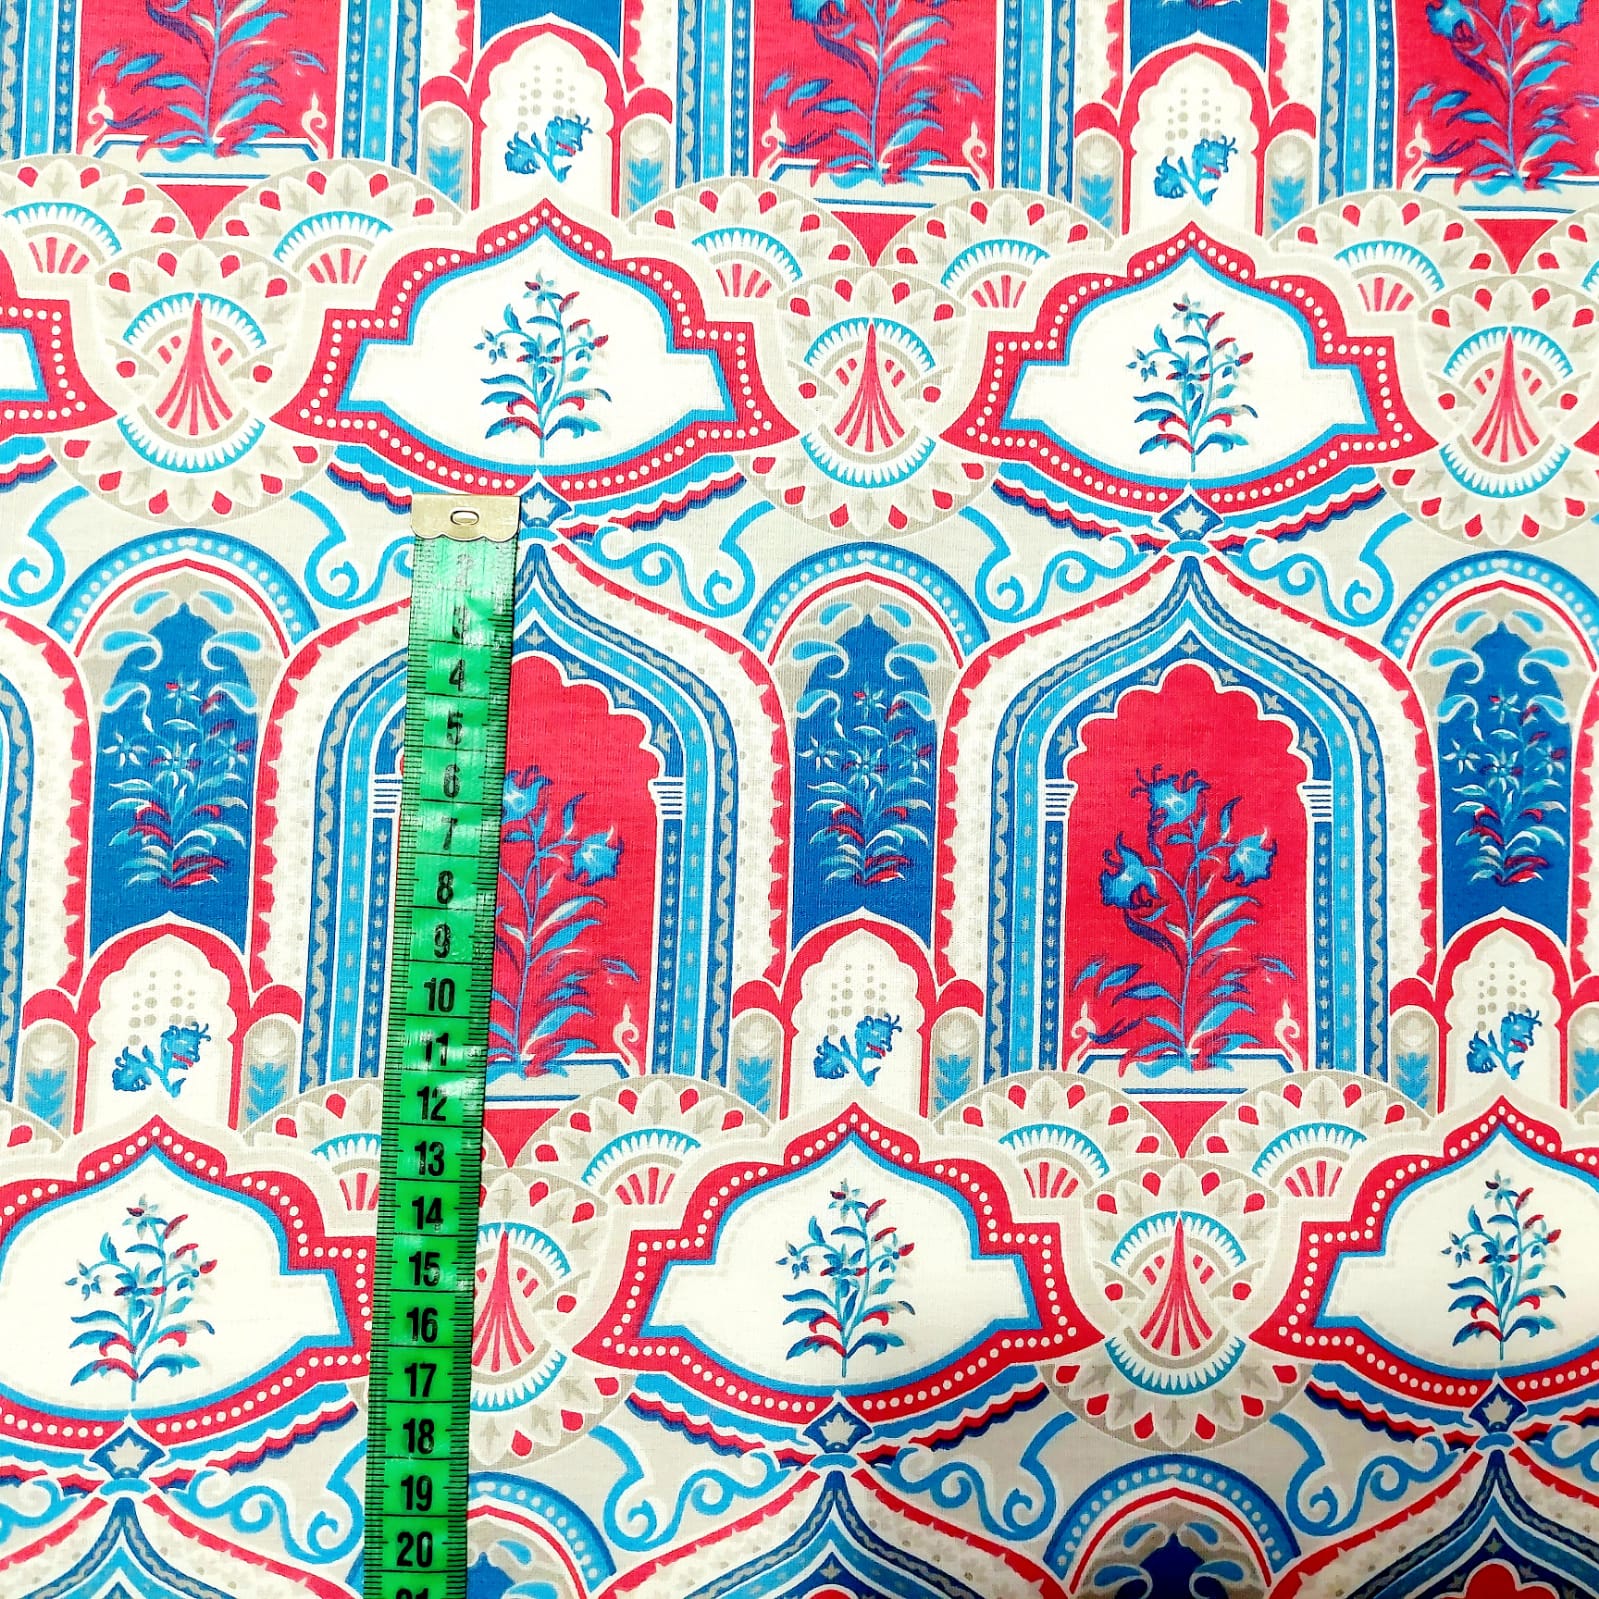 Tecido tricoline - Col. Oriente - Divino Arranjo - Palácio barrado azul c/ vermelho - Fernando Maluhy  (50x1,50cm)       